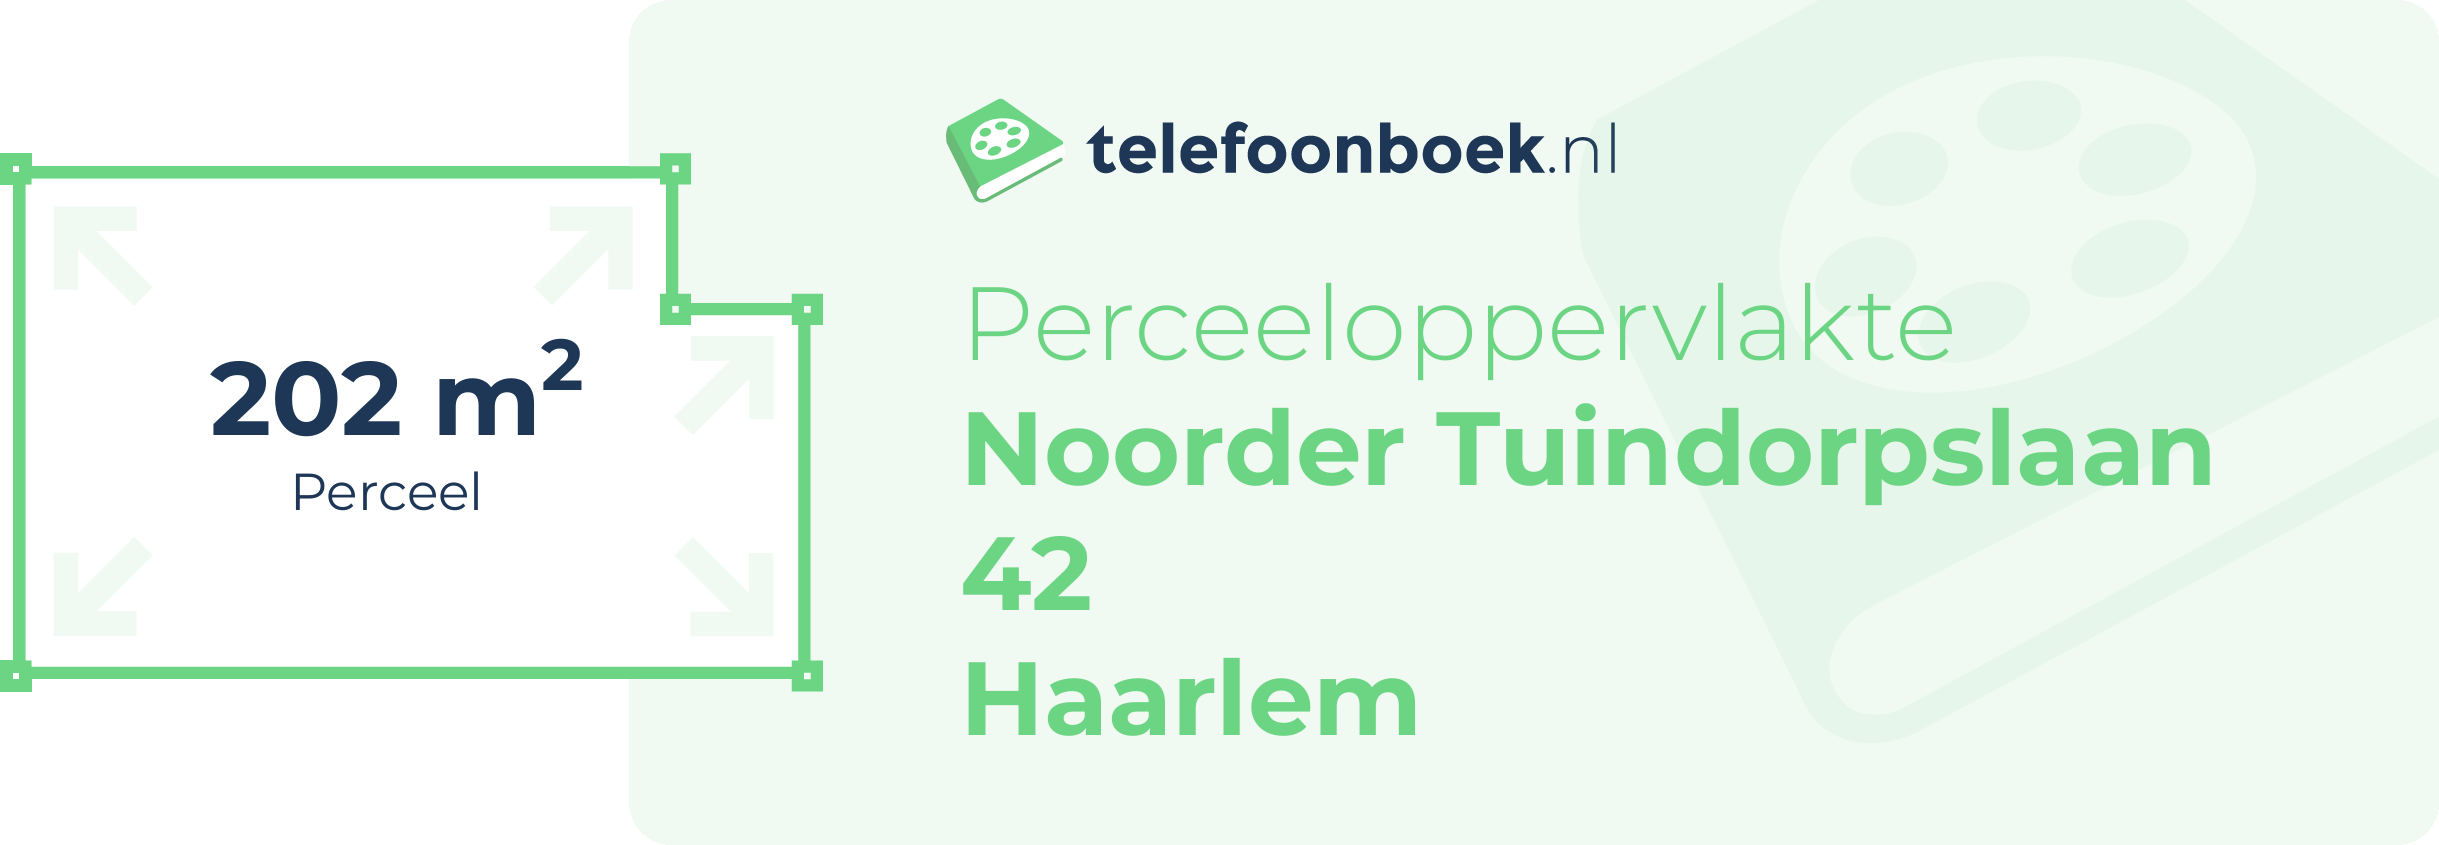 Perceeloppervlakte Noorder Tuindorpslaan 42 Haarlem